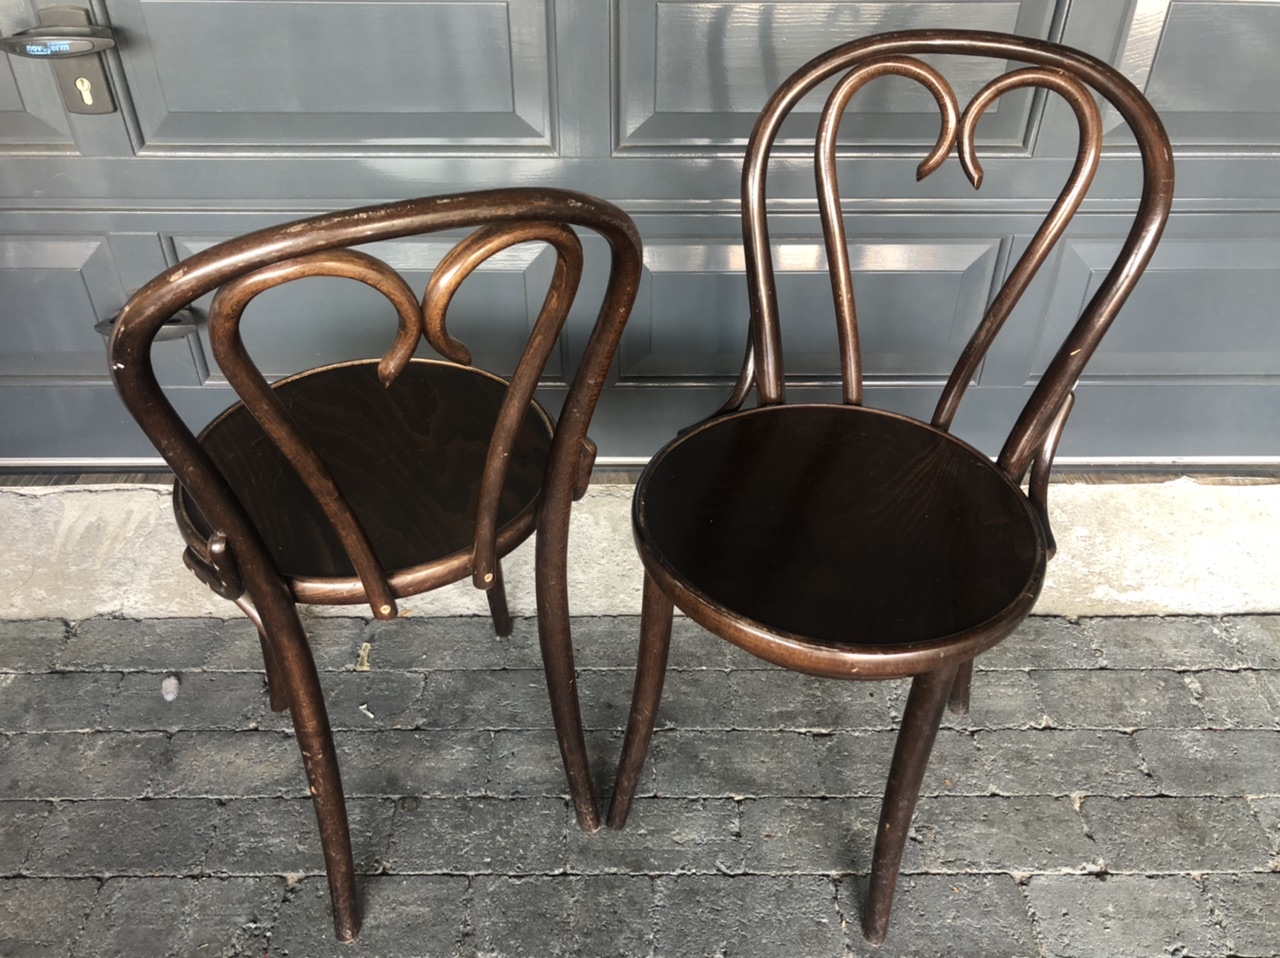 De parel meubilair bistrot chaises bistro chairs thonet model cafe chair stolar